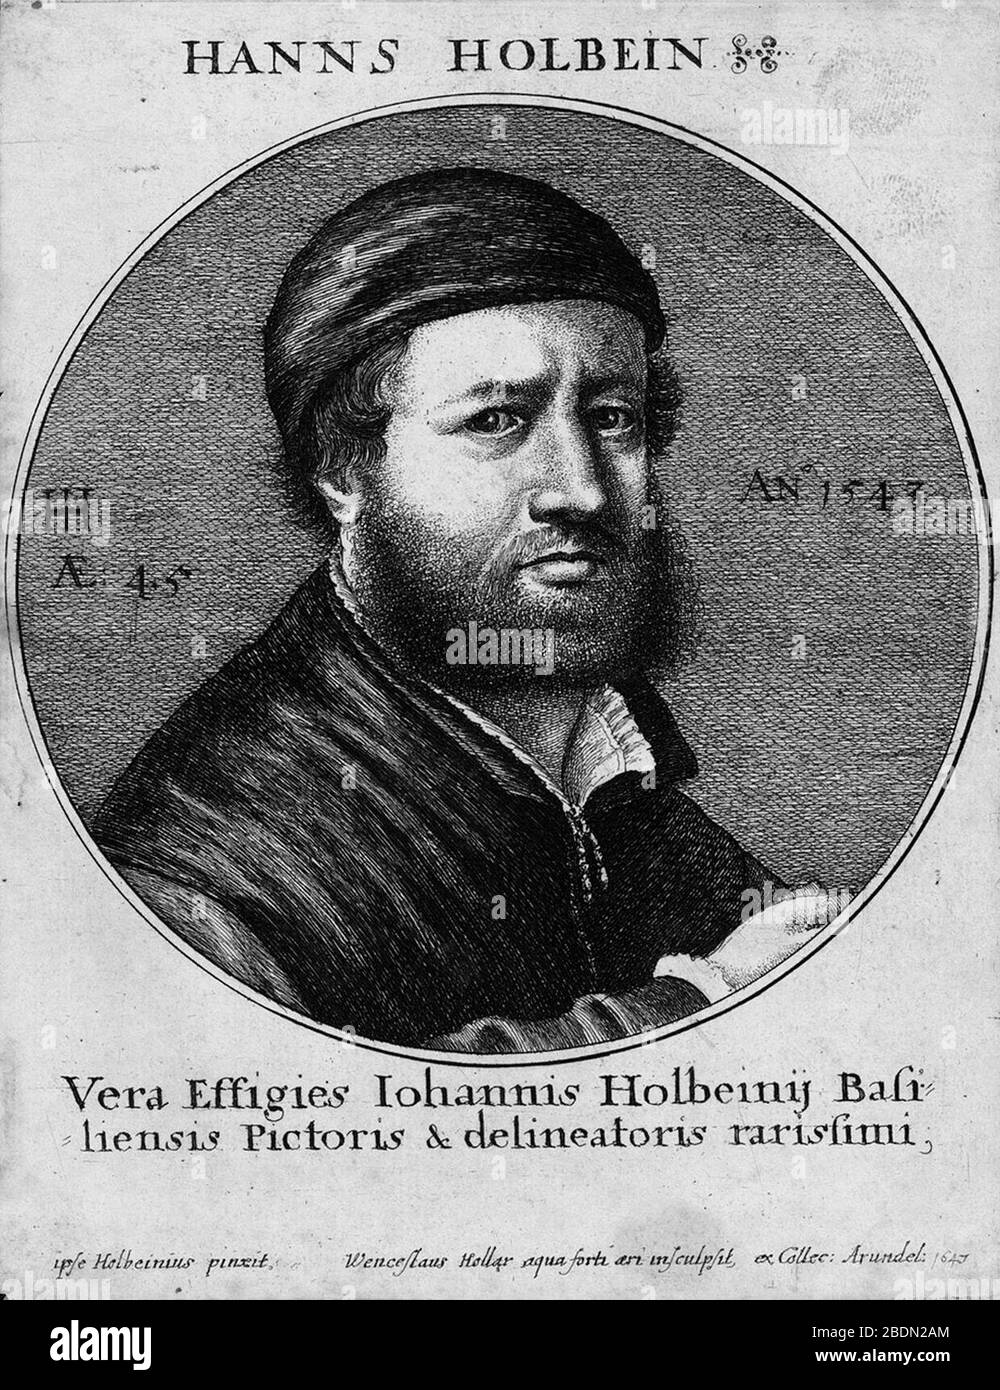 Hans Holbein von Wenzel Hollar. Stock Photo